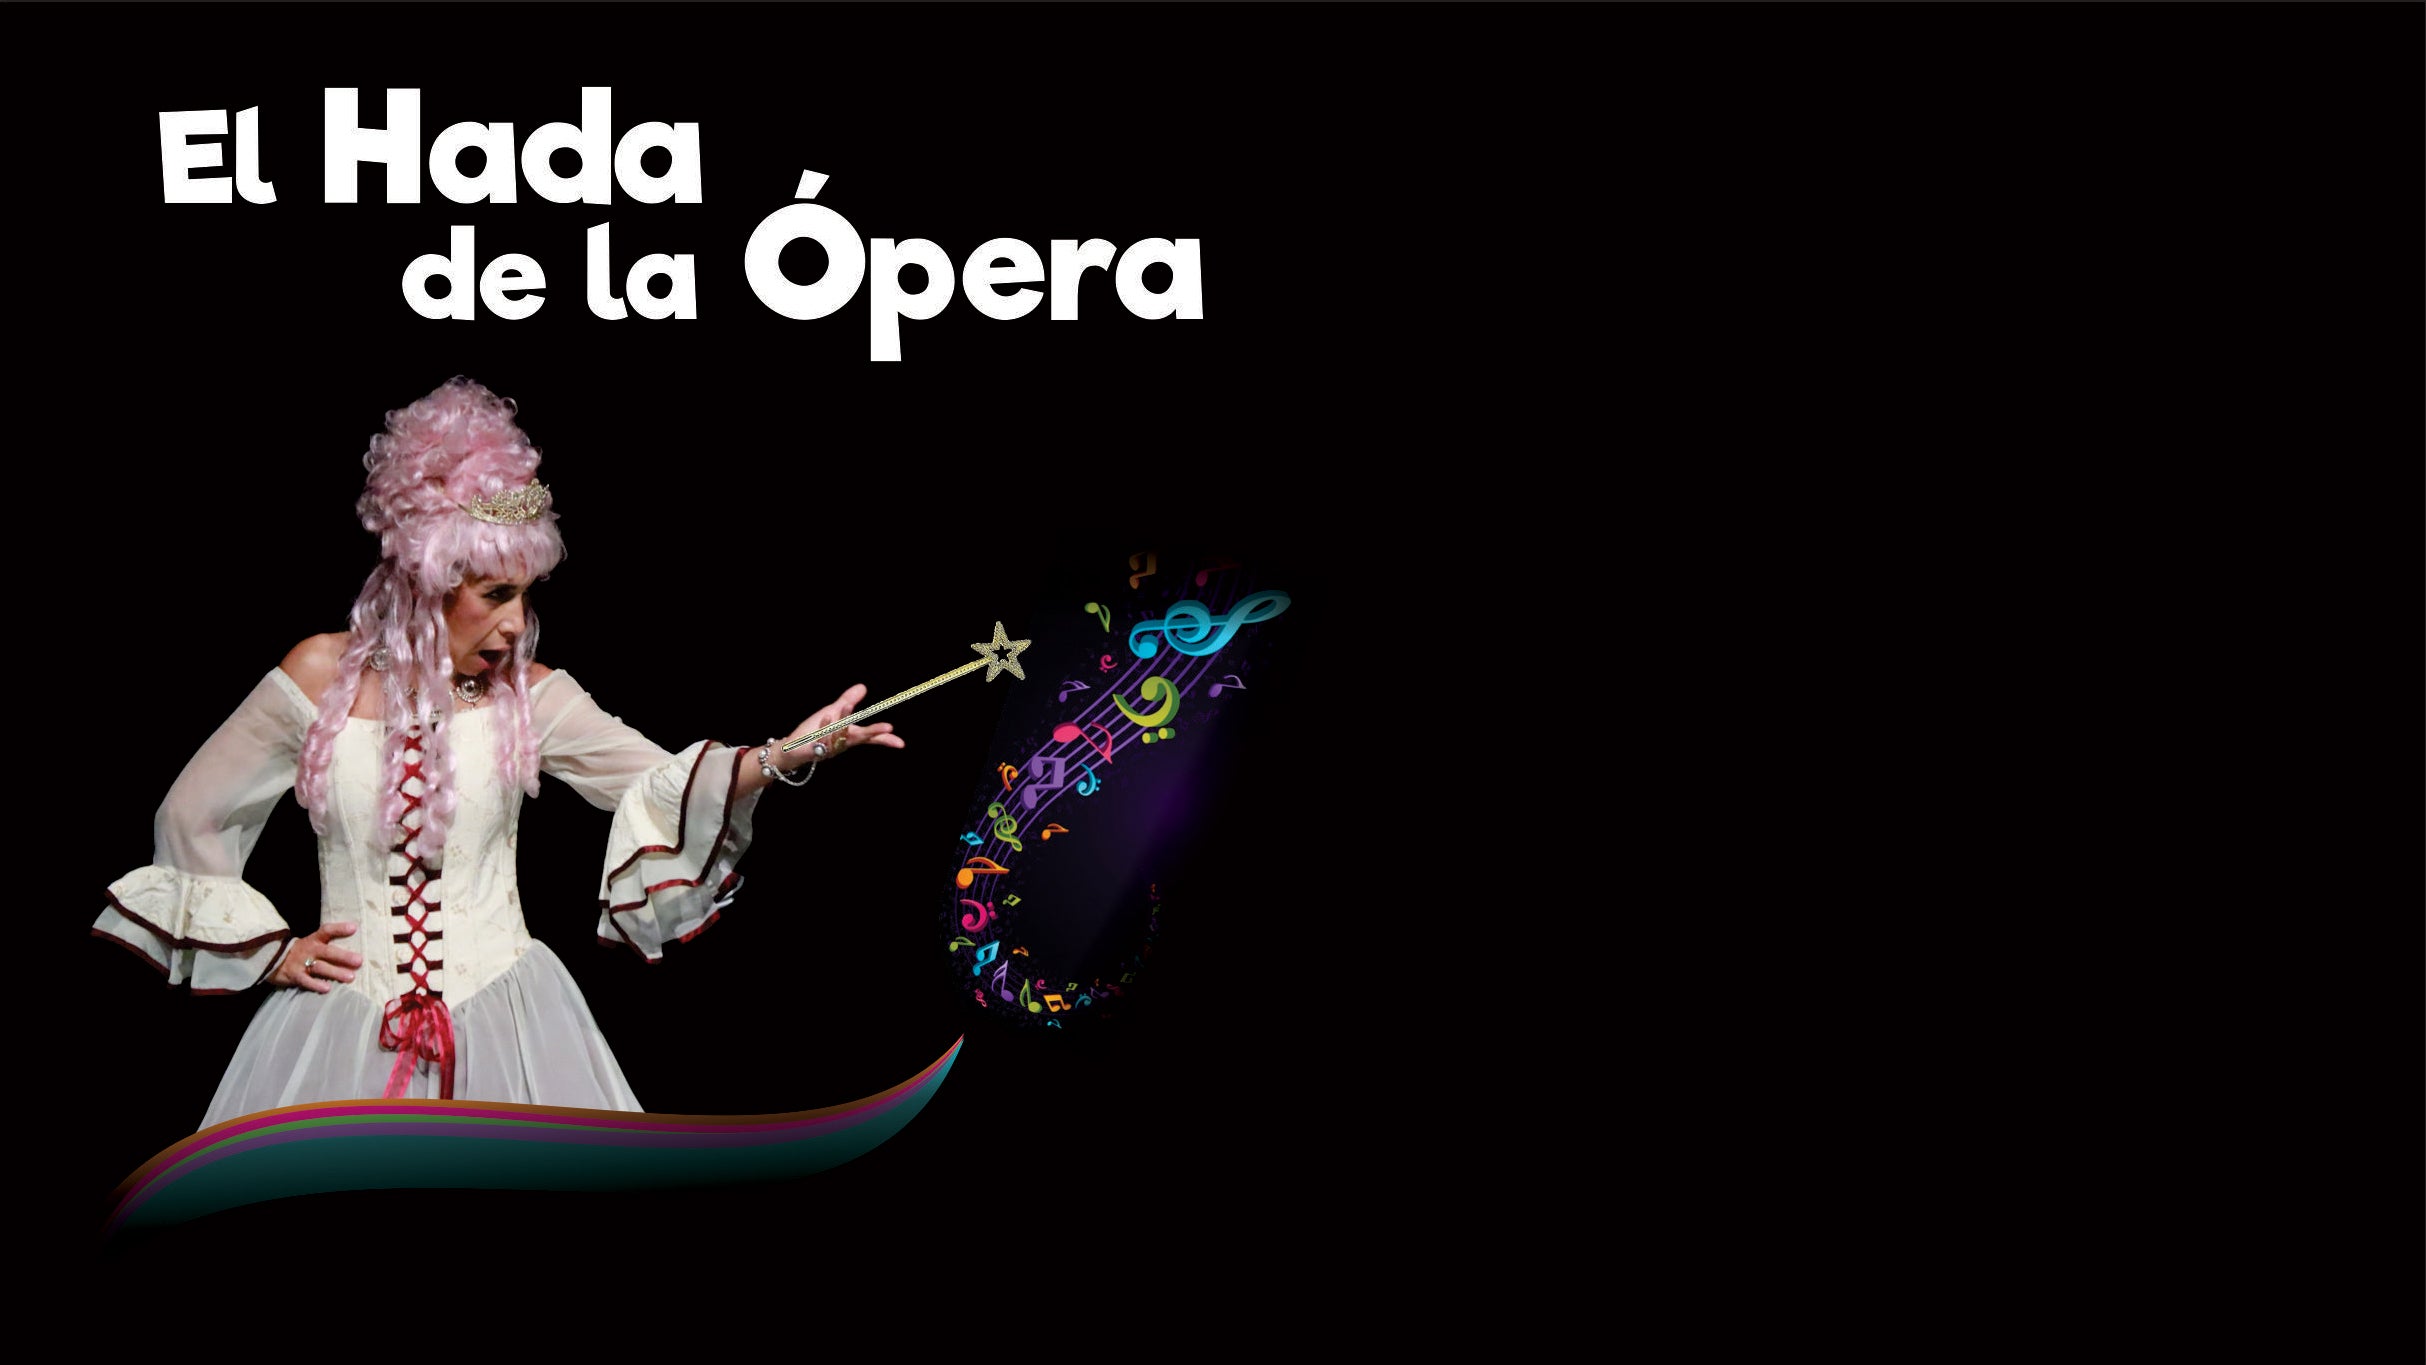 El Hada de la Opera presale information on freepresalepasswords.com